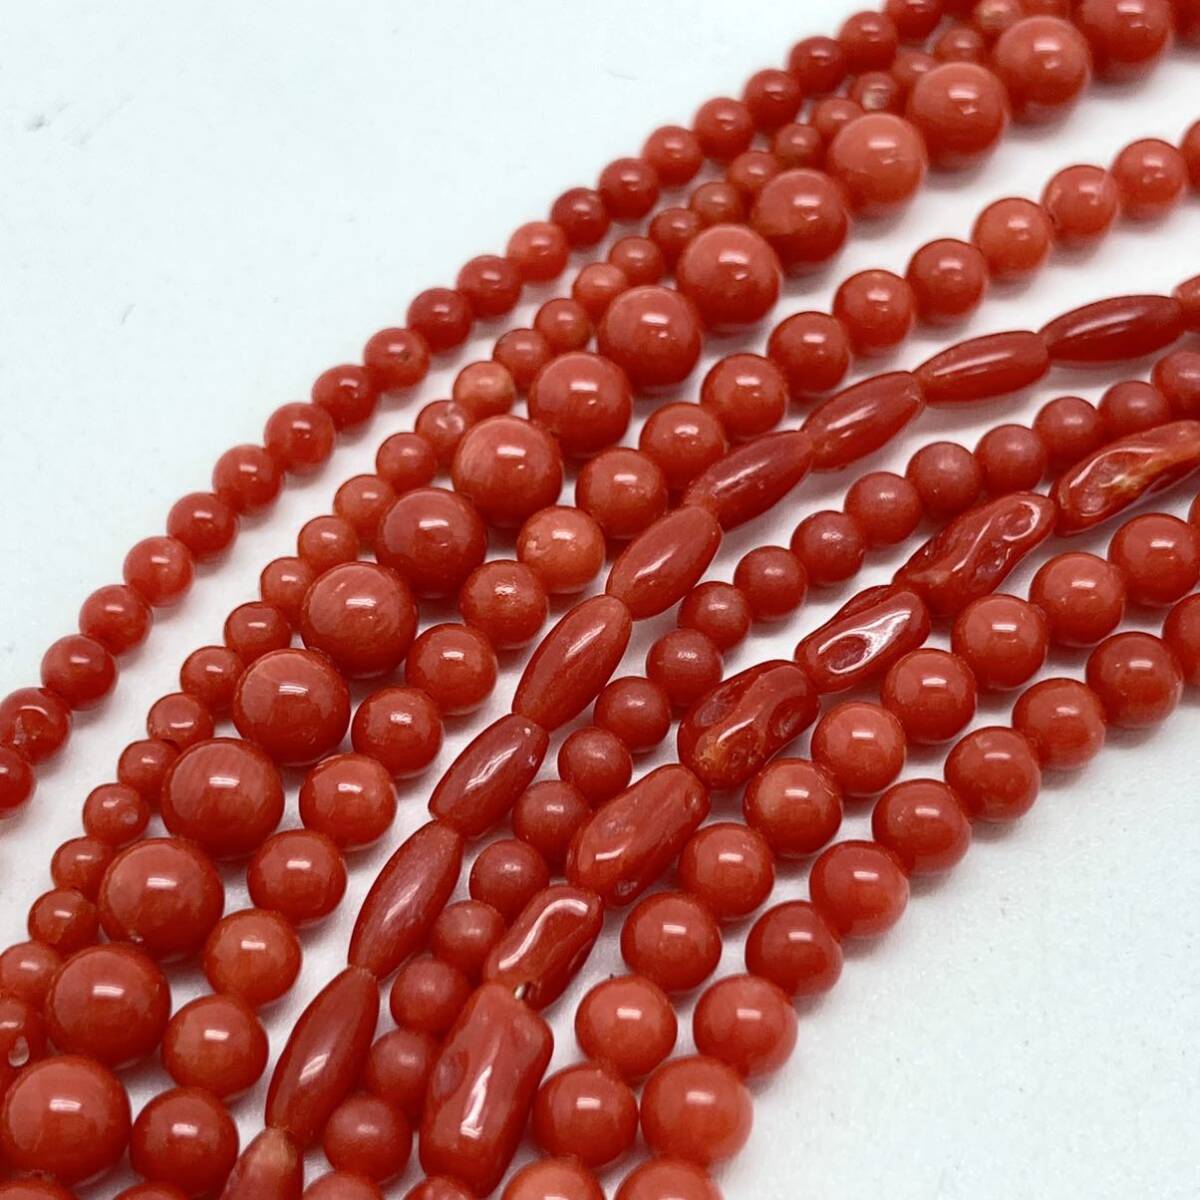 「珊瑚アクセサリーパーツおまとめ」a 重量約53g 約両穴 丸玉 ネックレス necklace coral parts コーラル サンゴ 赤 丸玉 CE0の画像3